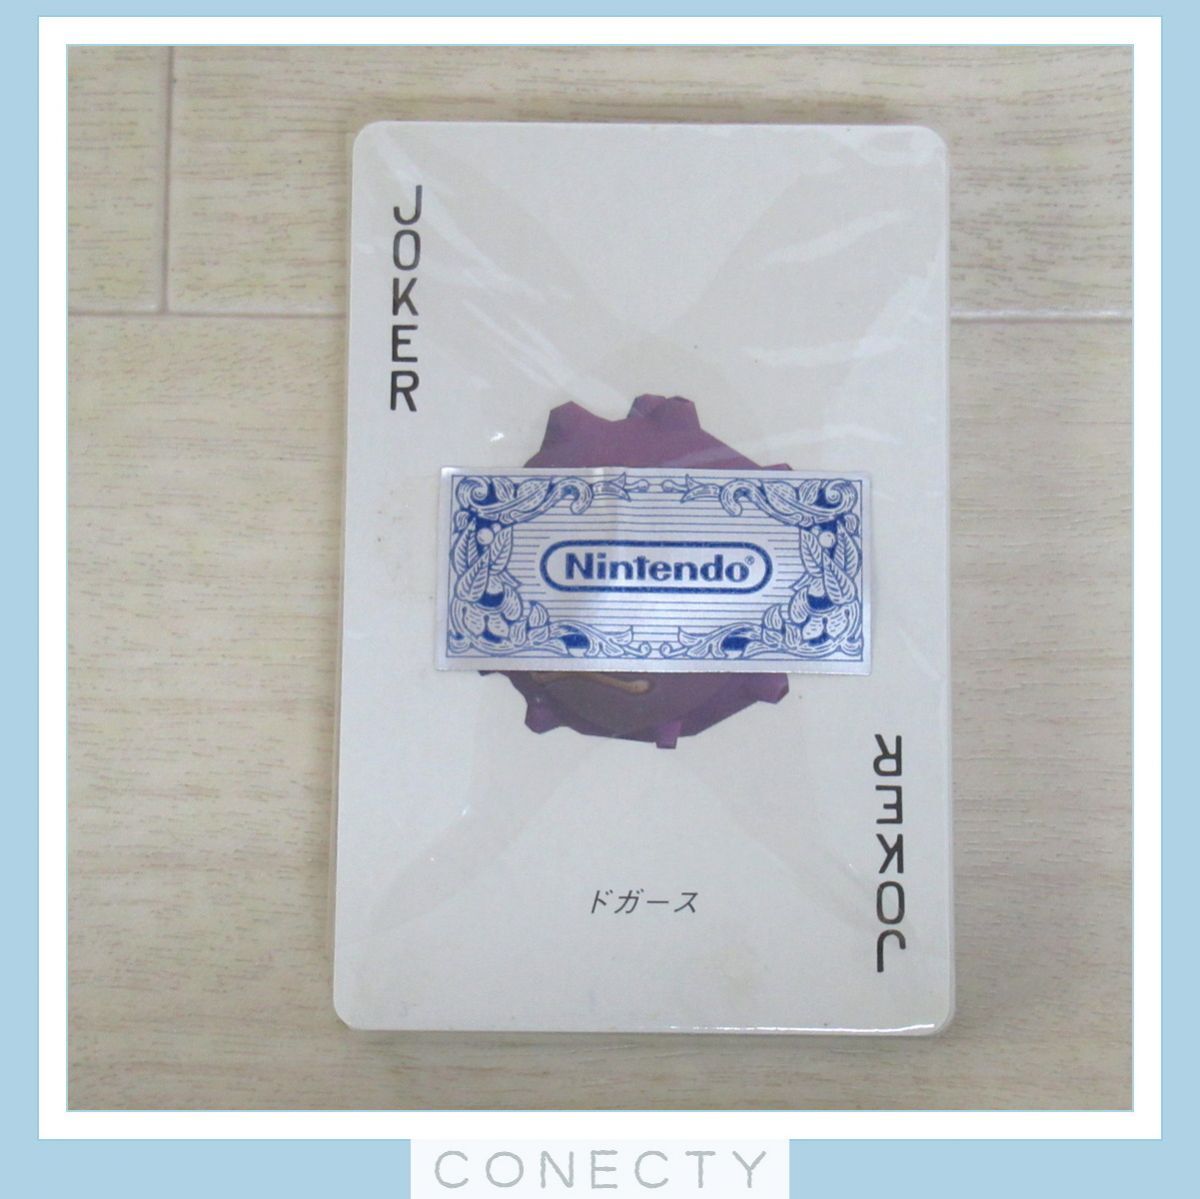  Pokemon карты Green зеленый fsigibana3D Pocket Monster 1998 nintendo [ не использовался / внутри shrink нераспечатанный товар ] ценный * подлинная вещь [J2[SK